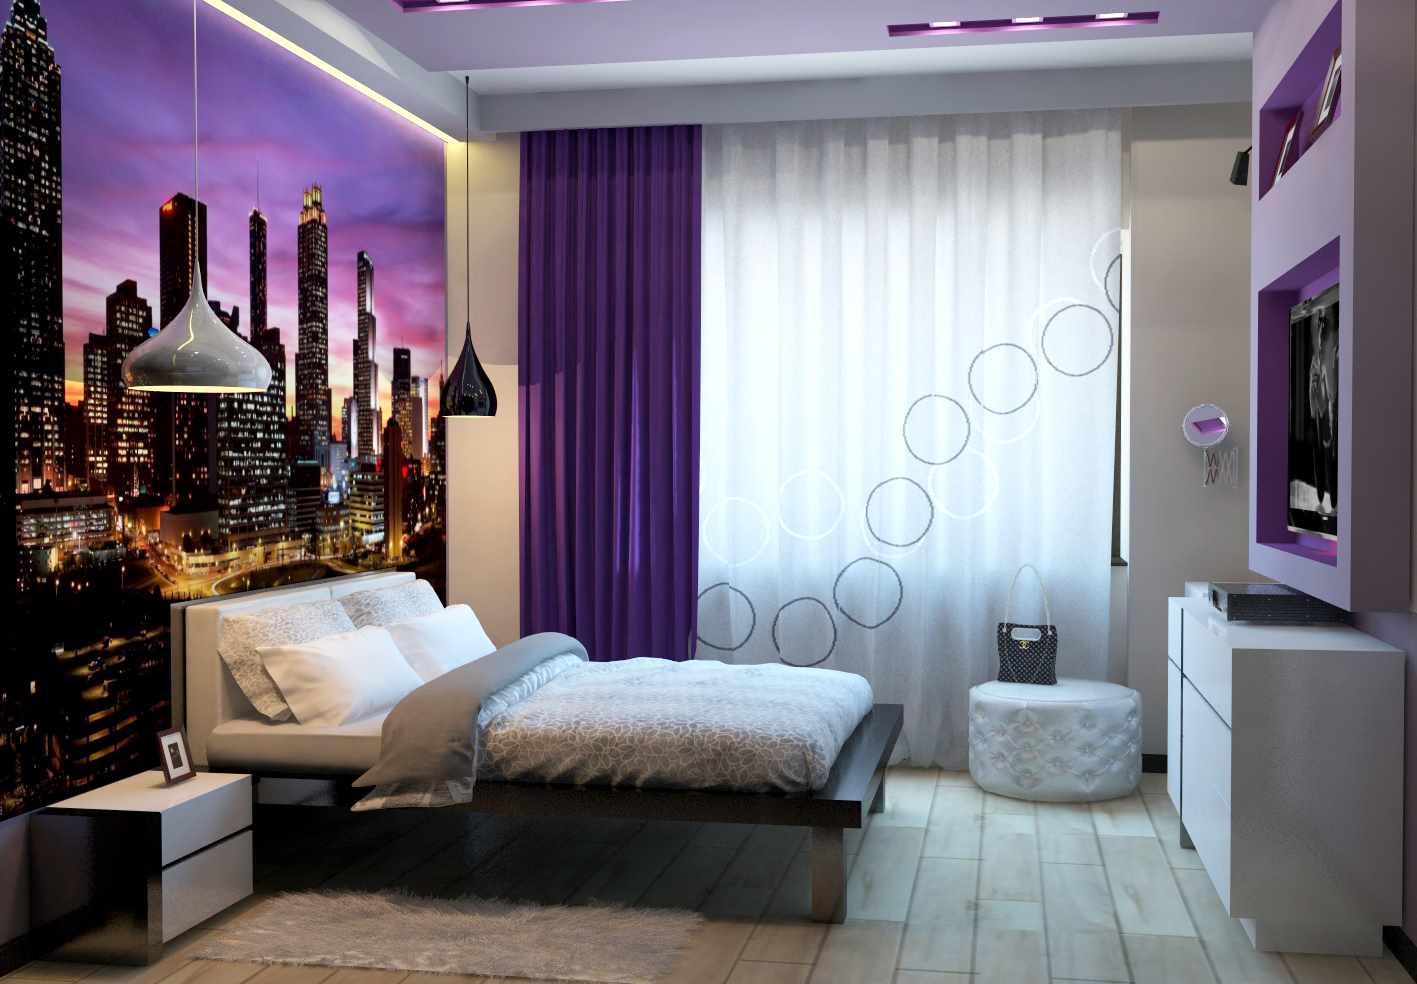 مثال على زخرفة جدار غرفة النوم الجميلة